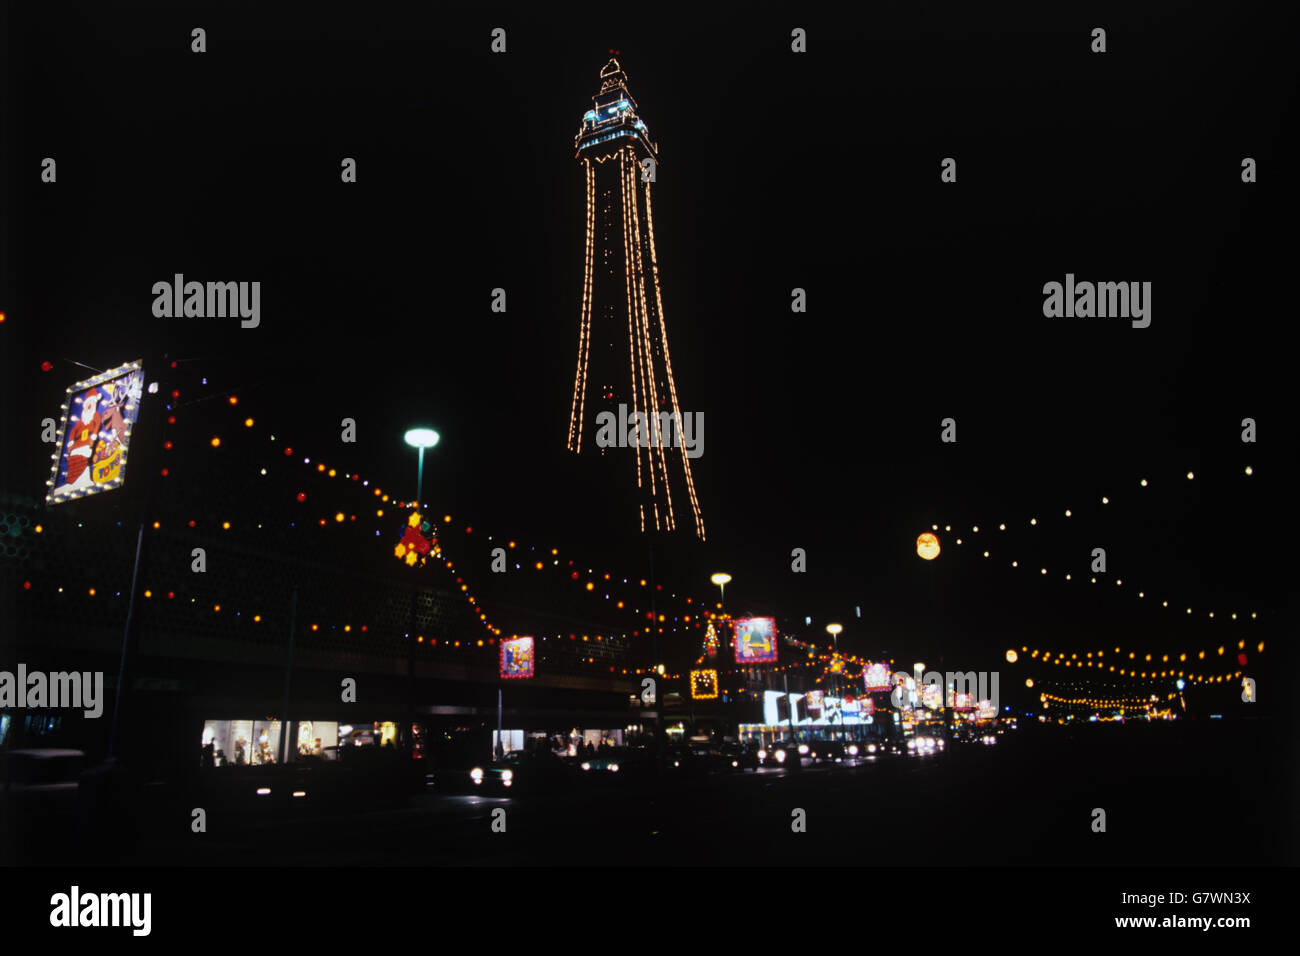 Der Blackpool Tower ist mit Lichtern beleuchtet und dominiert die Herbstbeleuchtung des Resorts. Stockfoto